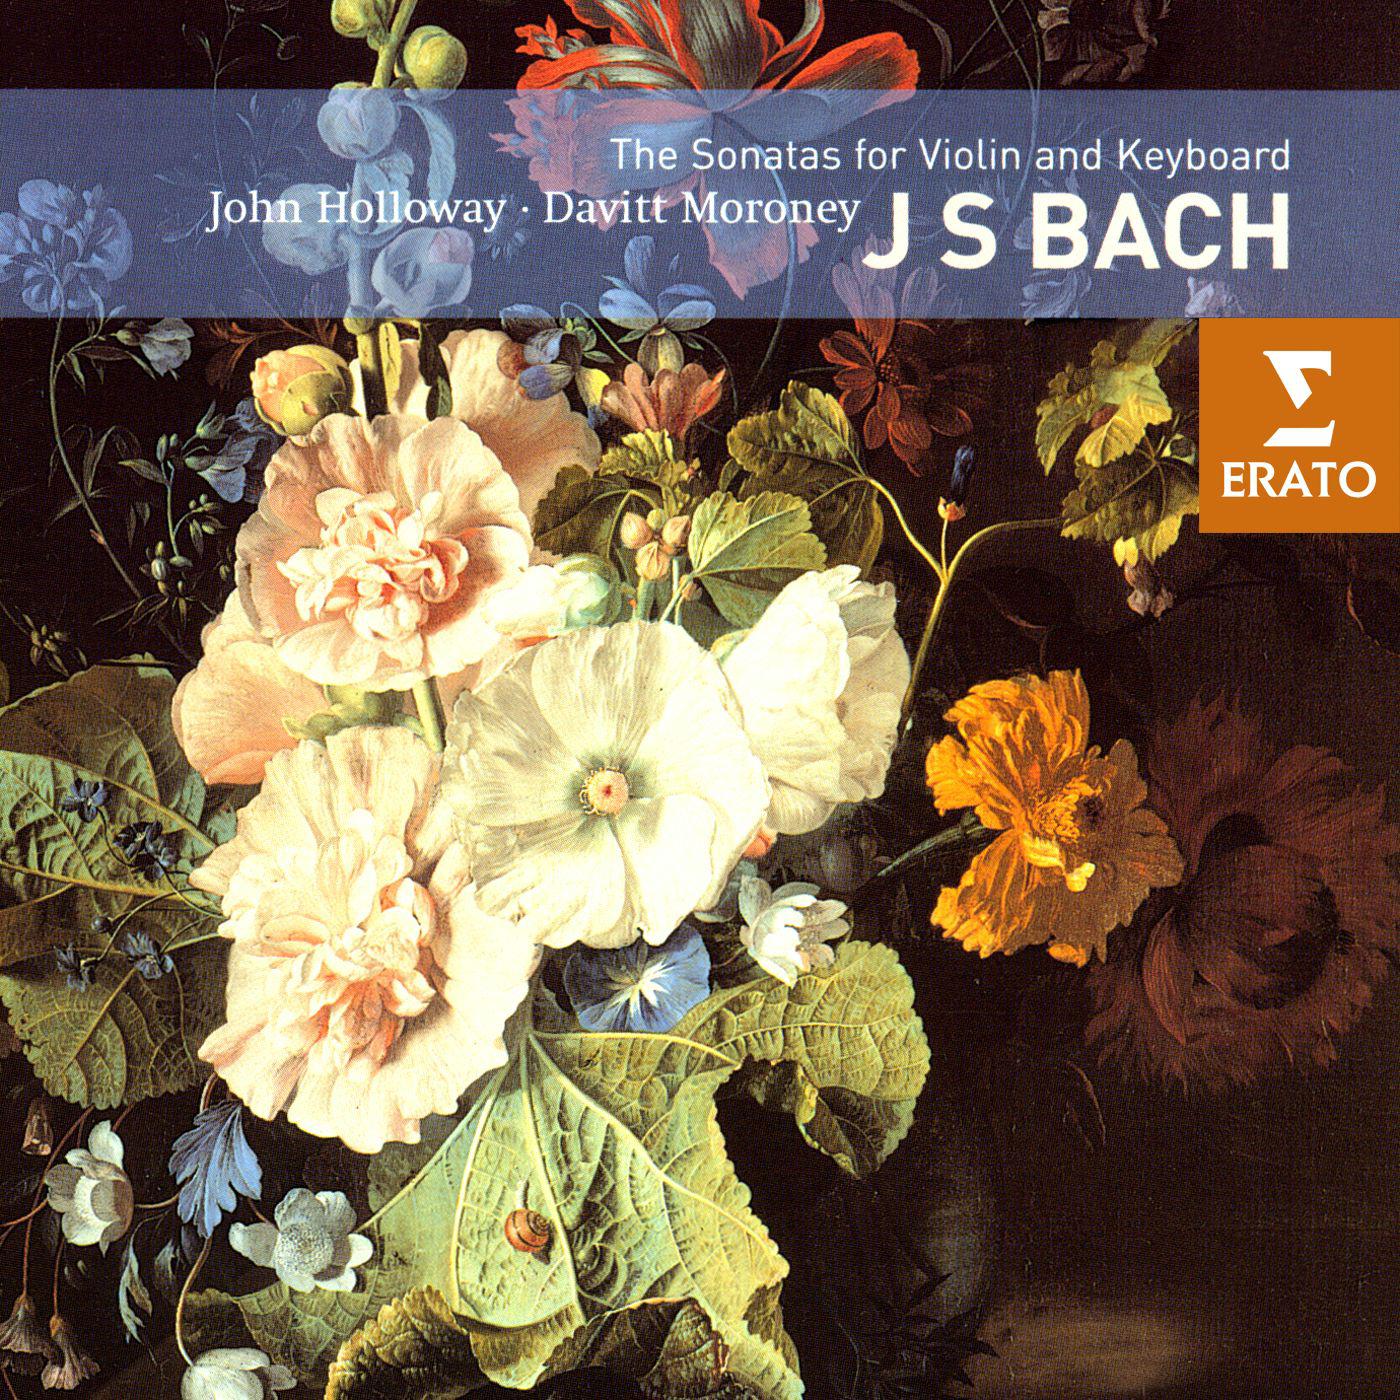 Sonata No. 4 in C minor for Violin and Harpsichord BWV1017: I. Largo